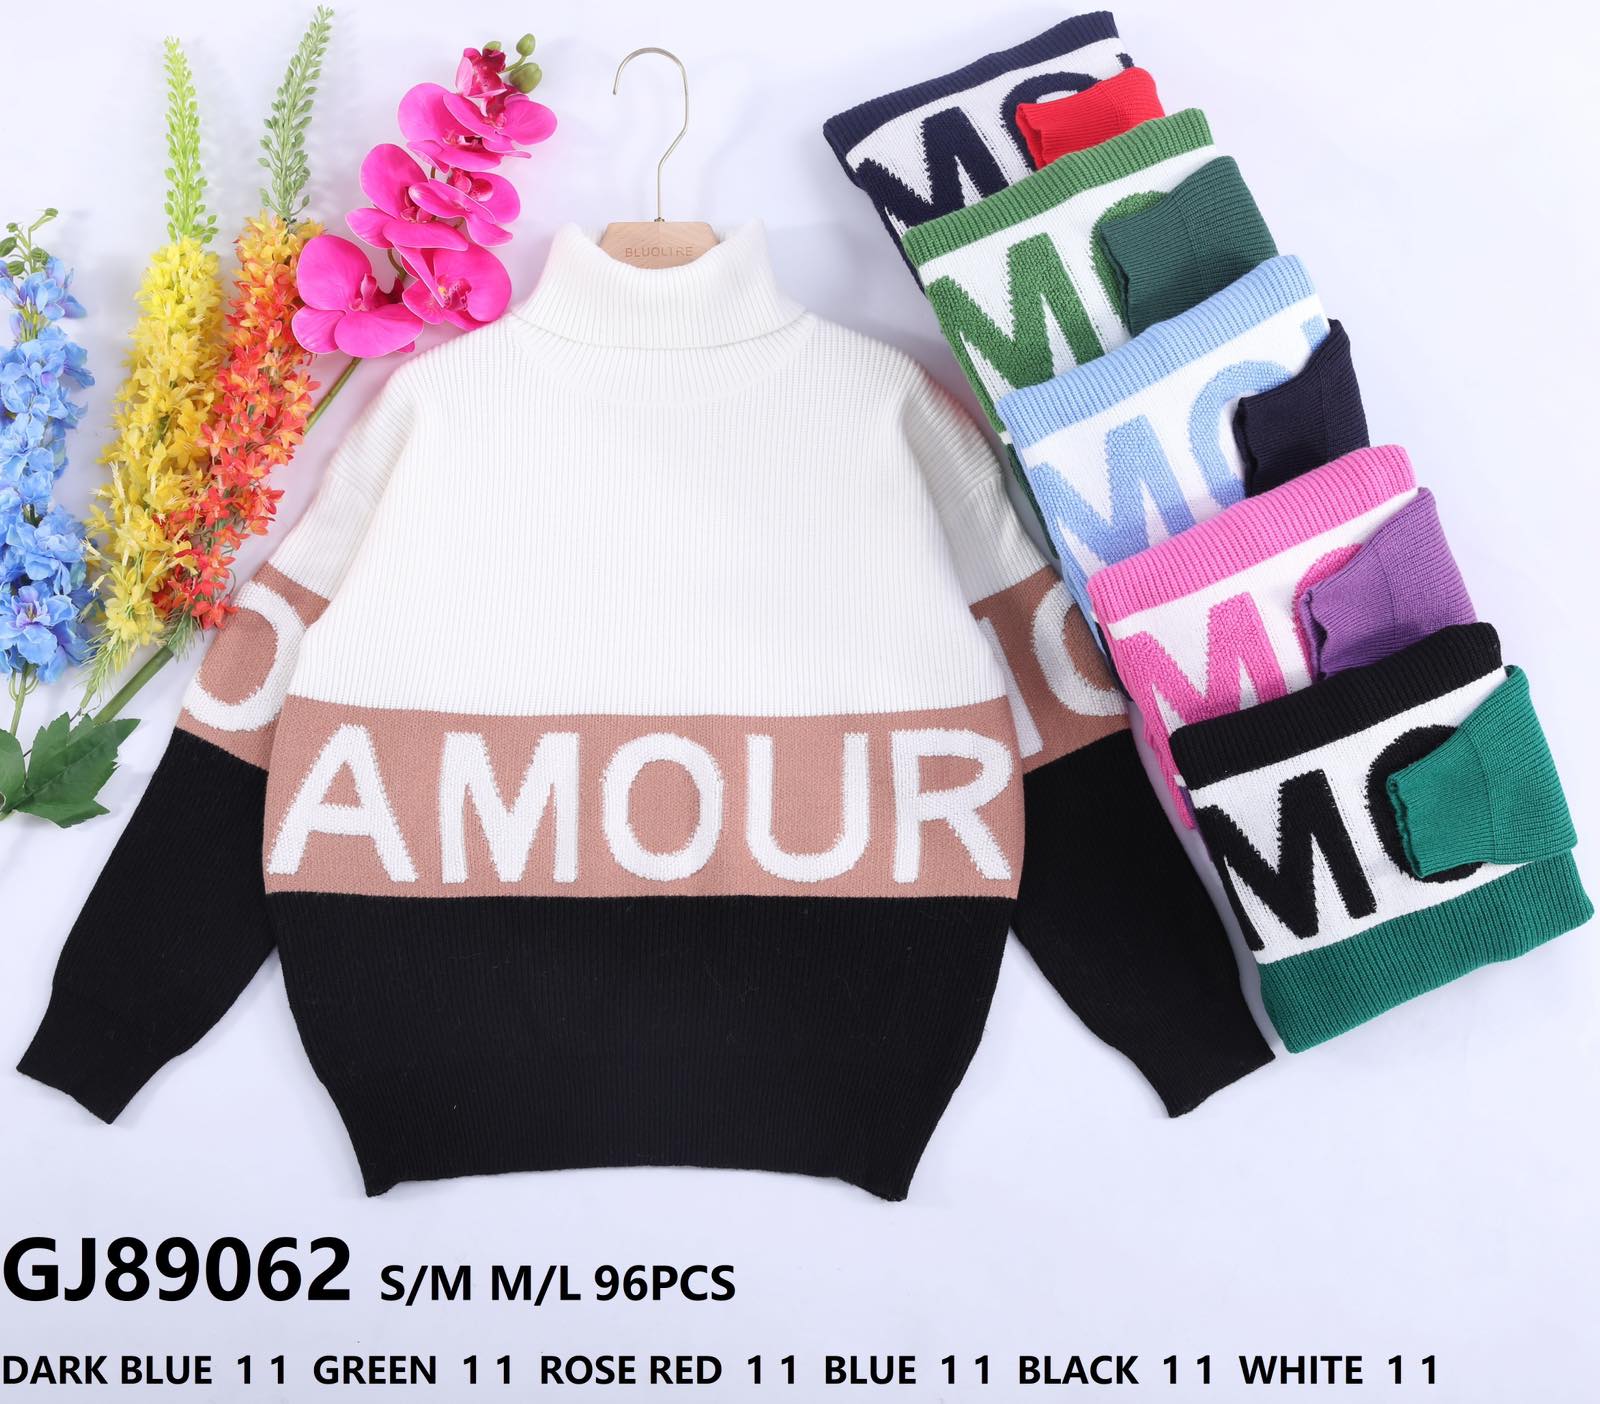  Swetry damskie (Francja produkt) Roz S/M-M/L  Mix kolor Paszka 12 szt